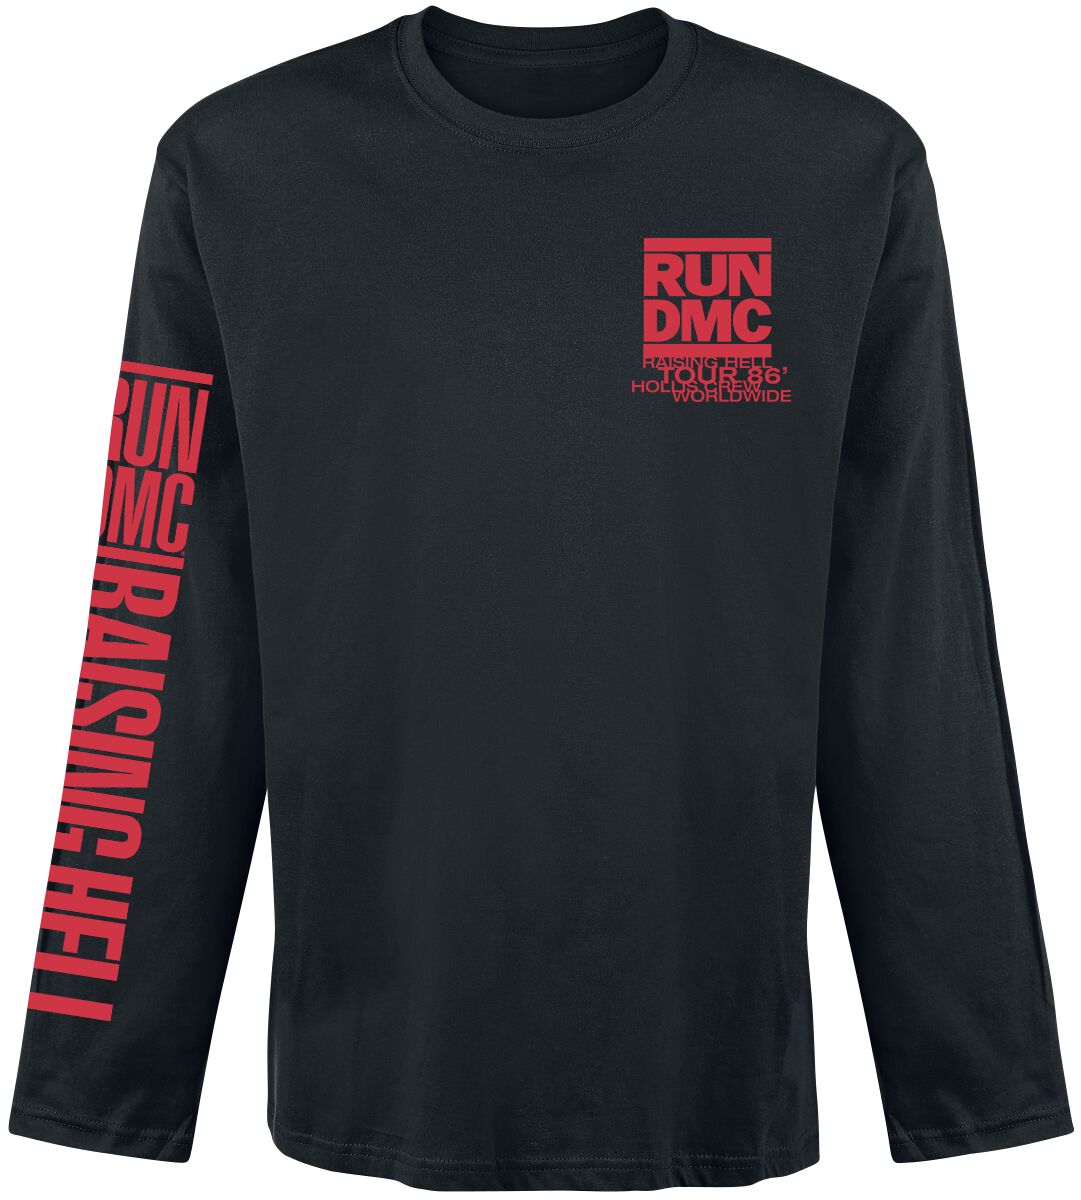 Run DMC Langarmshirt - Raising Hell Tour 86 - S bis XXL - für Männer - Größe L - schwarz  - Lizenziertes Merchandise!